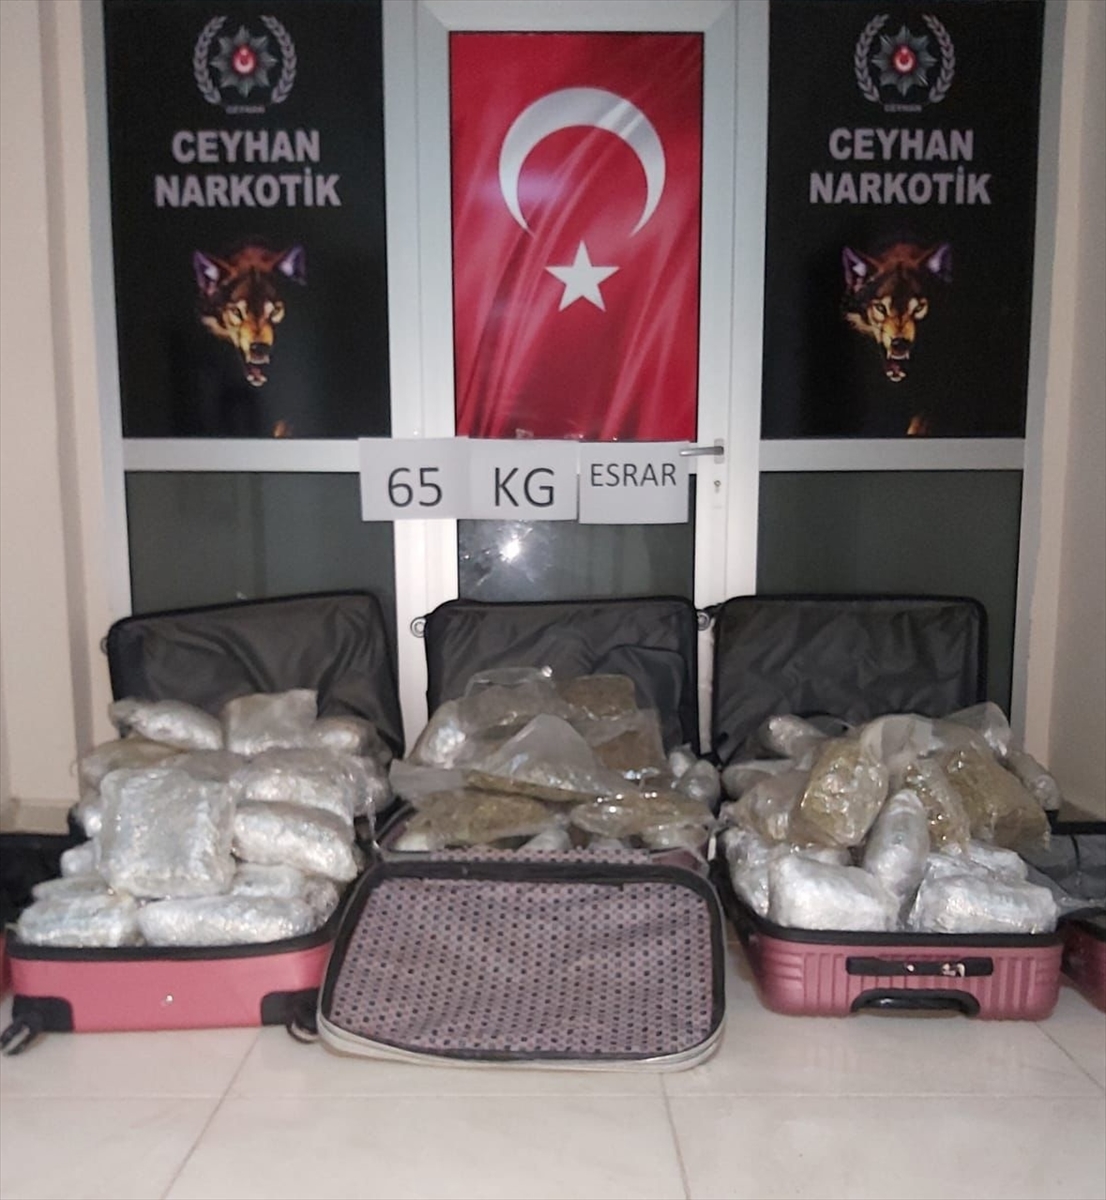 Adana'da kuru üzüm yüklü tırın dorsesinde 65 kilogram esrar ele geçirildi